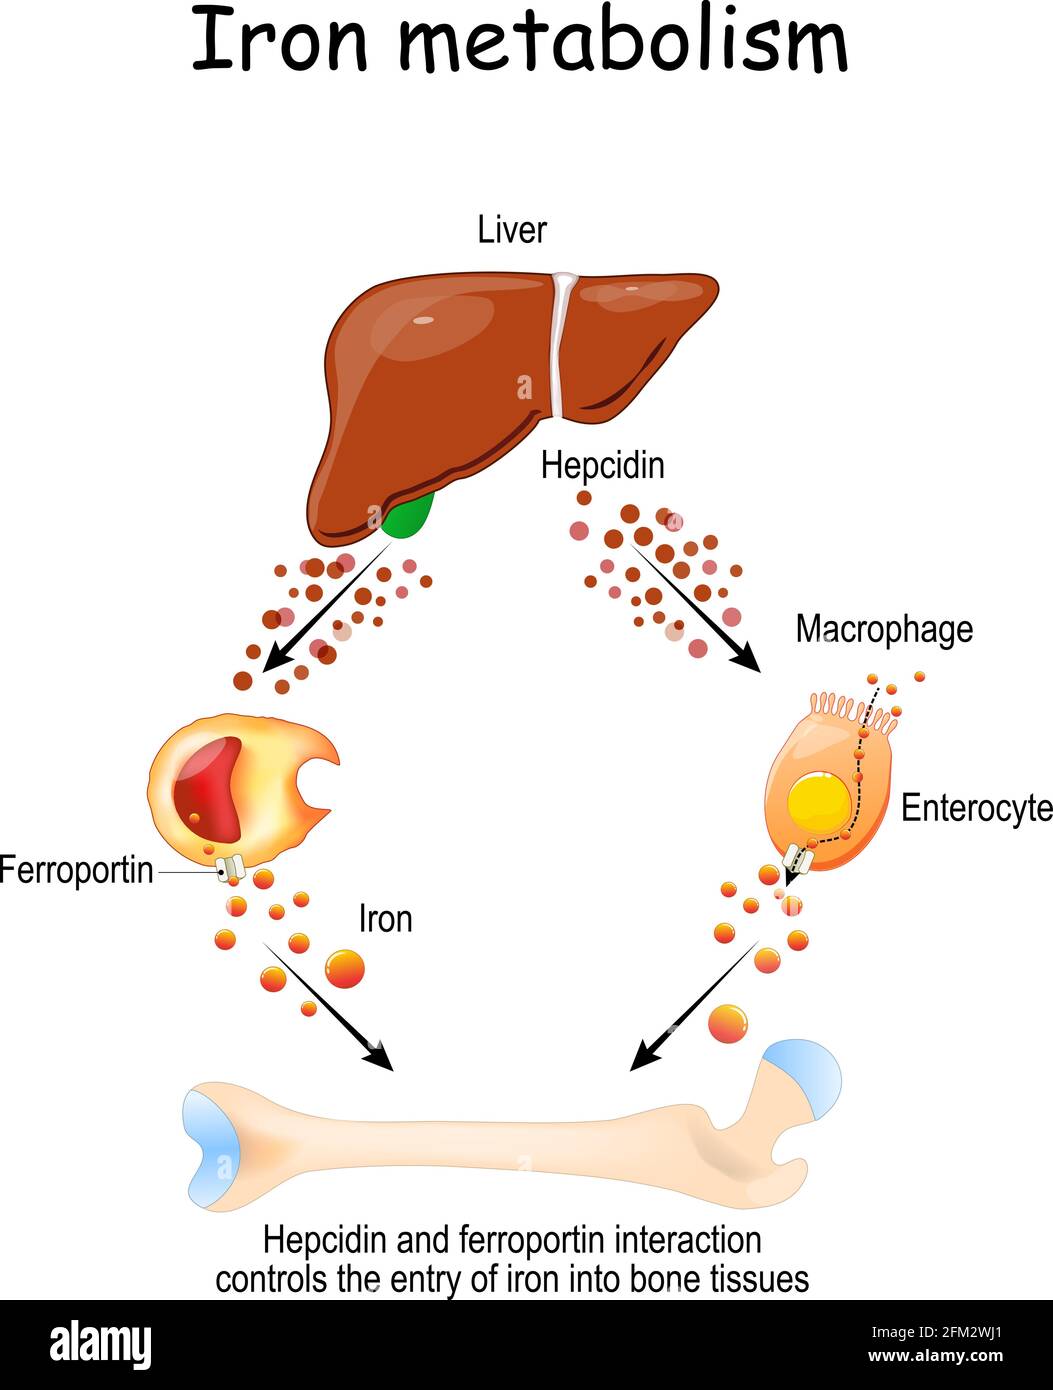 L'Hepcidin e la ferroportina dal fegato al macrofago e all'enterocita controllano l'ingresso del ferro nei tessuti ossei. Illustrazione Vettoriale